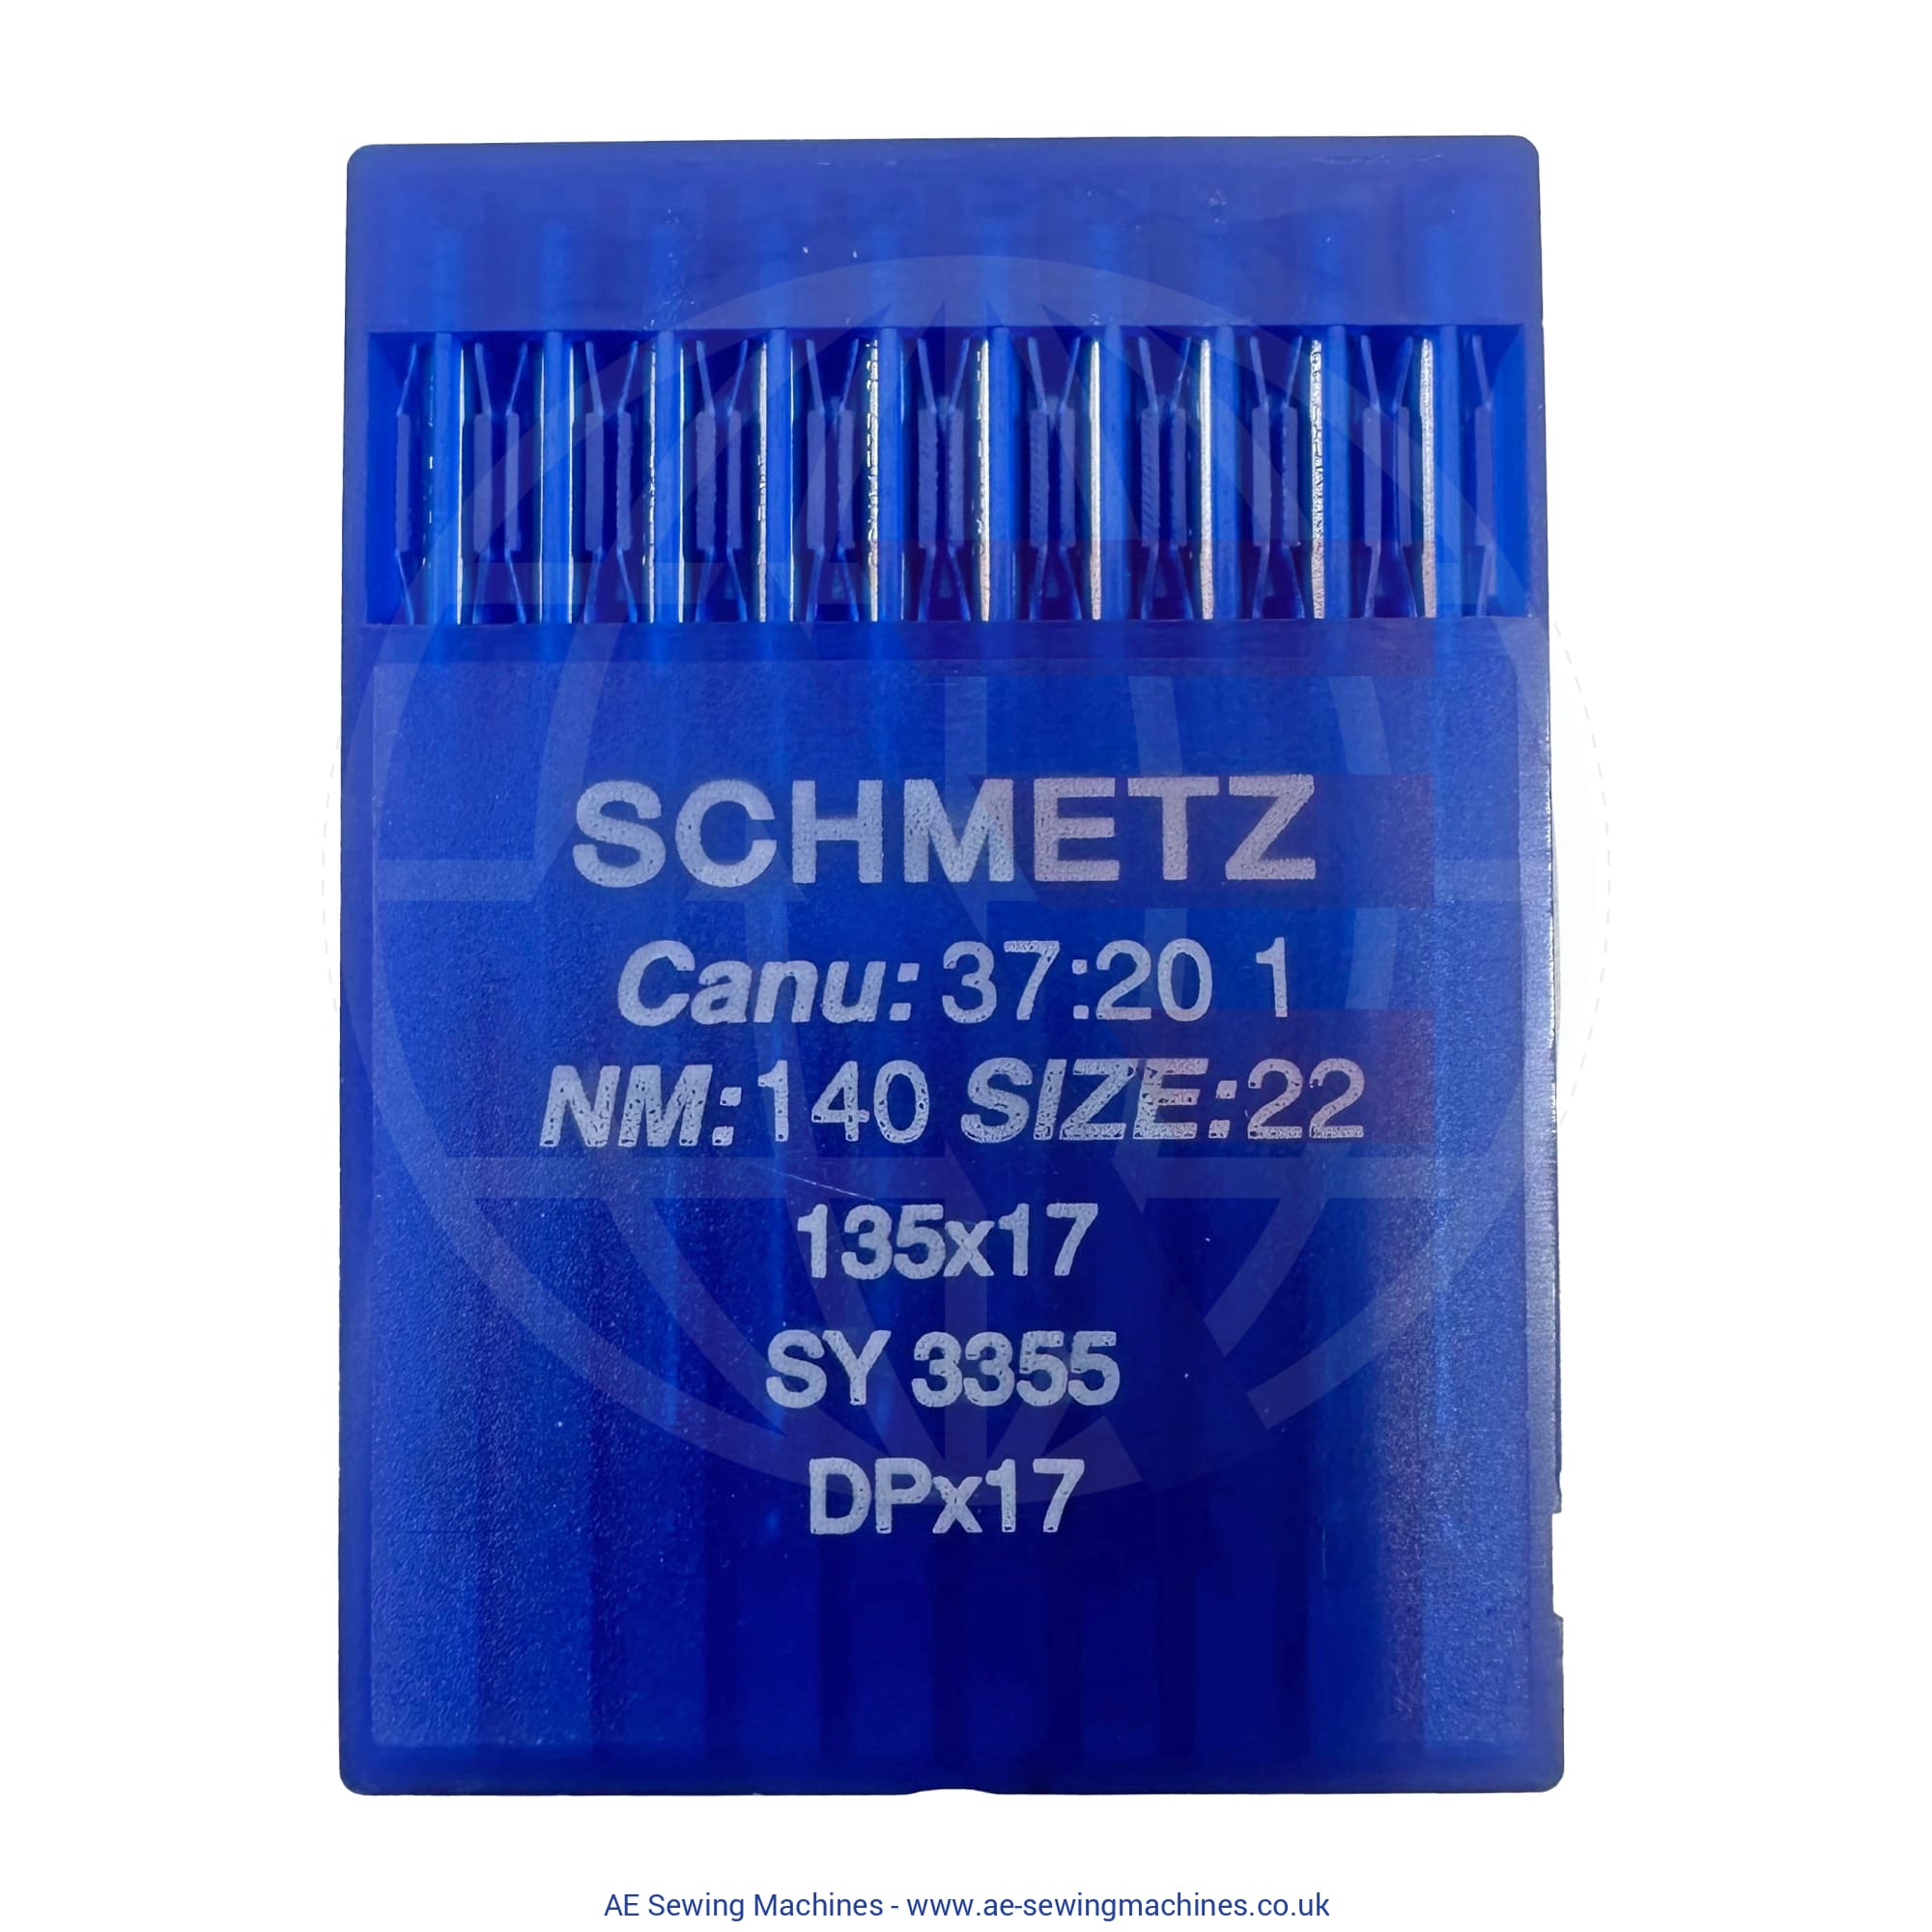 Schmetz 135X17 Regular Point Needles 140 Sewing Machine